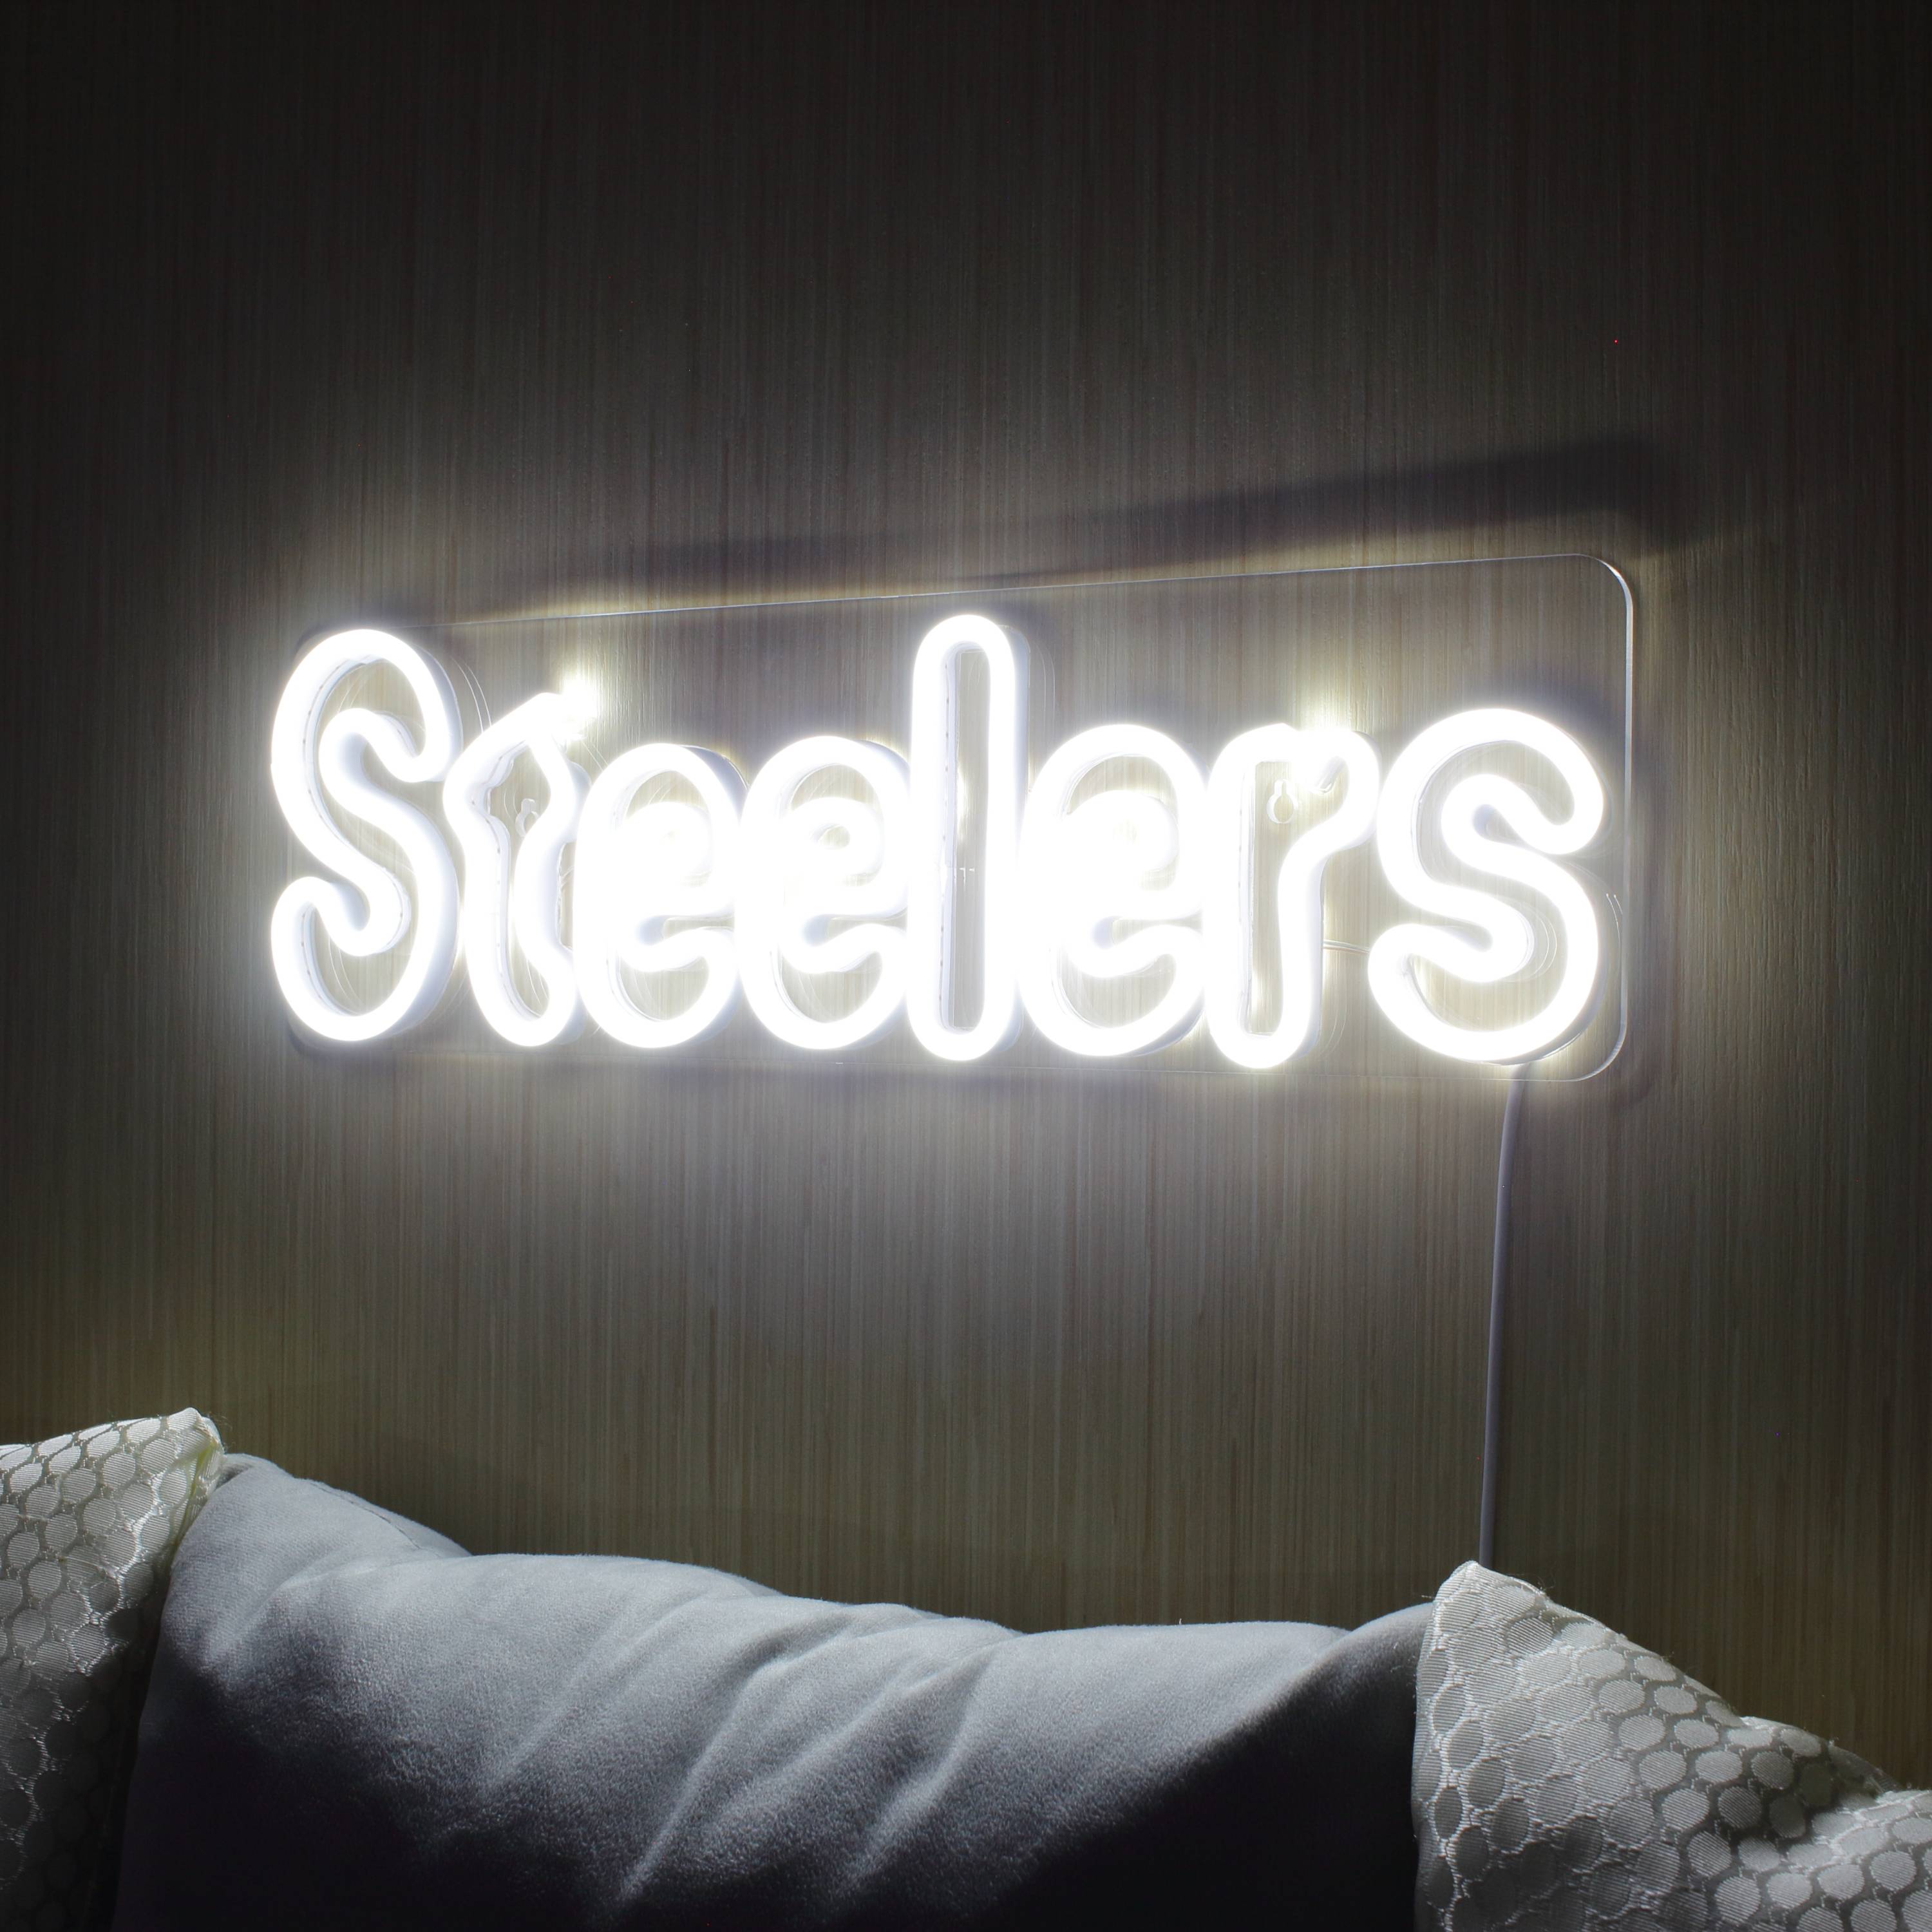 NFL STEELERS Large Flex Neon LED Sign